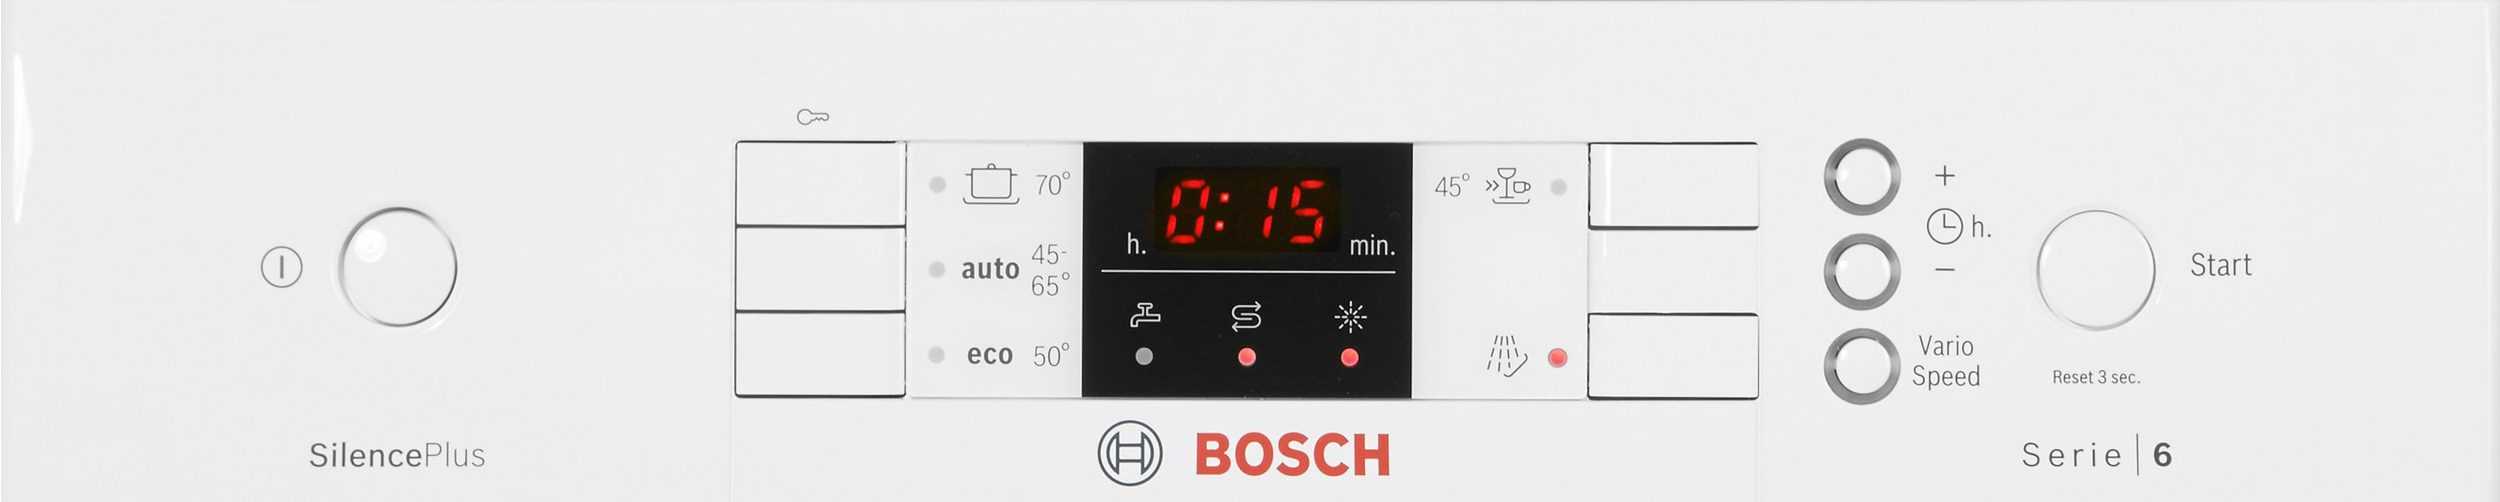 Коды ошибок посудомоечных машин bosch: e24, e27, устранение неисправностей